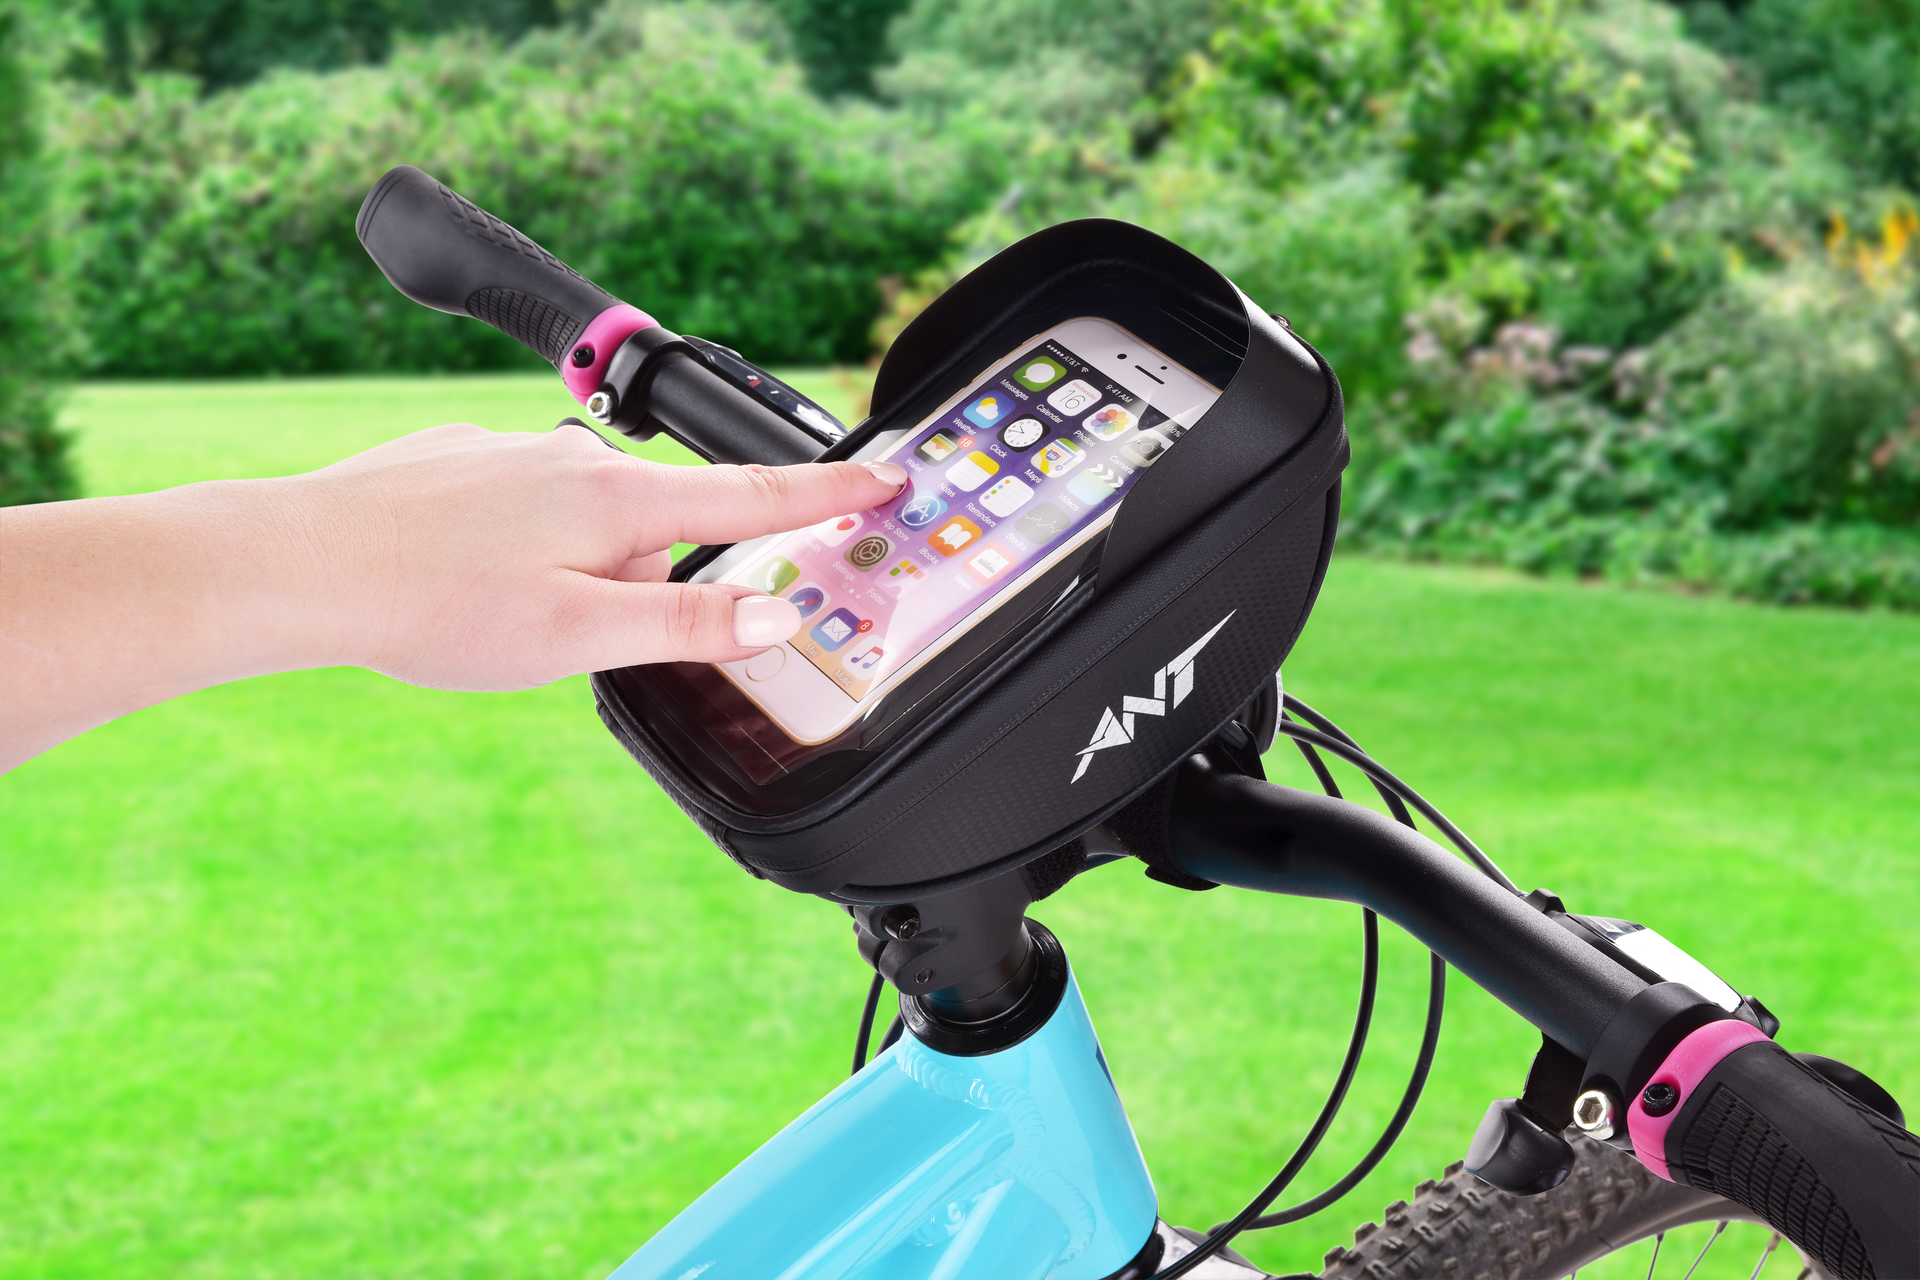 Cyklo vrecko/taška na predstavec kolesa s puzdrom na telefón a tienidlom